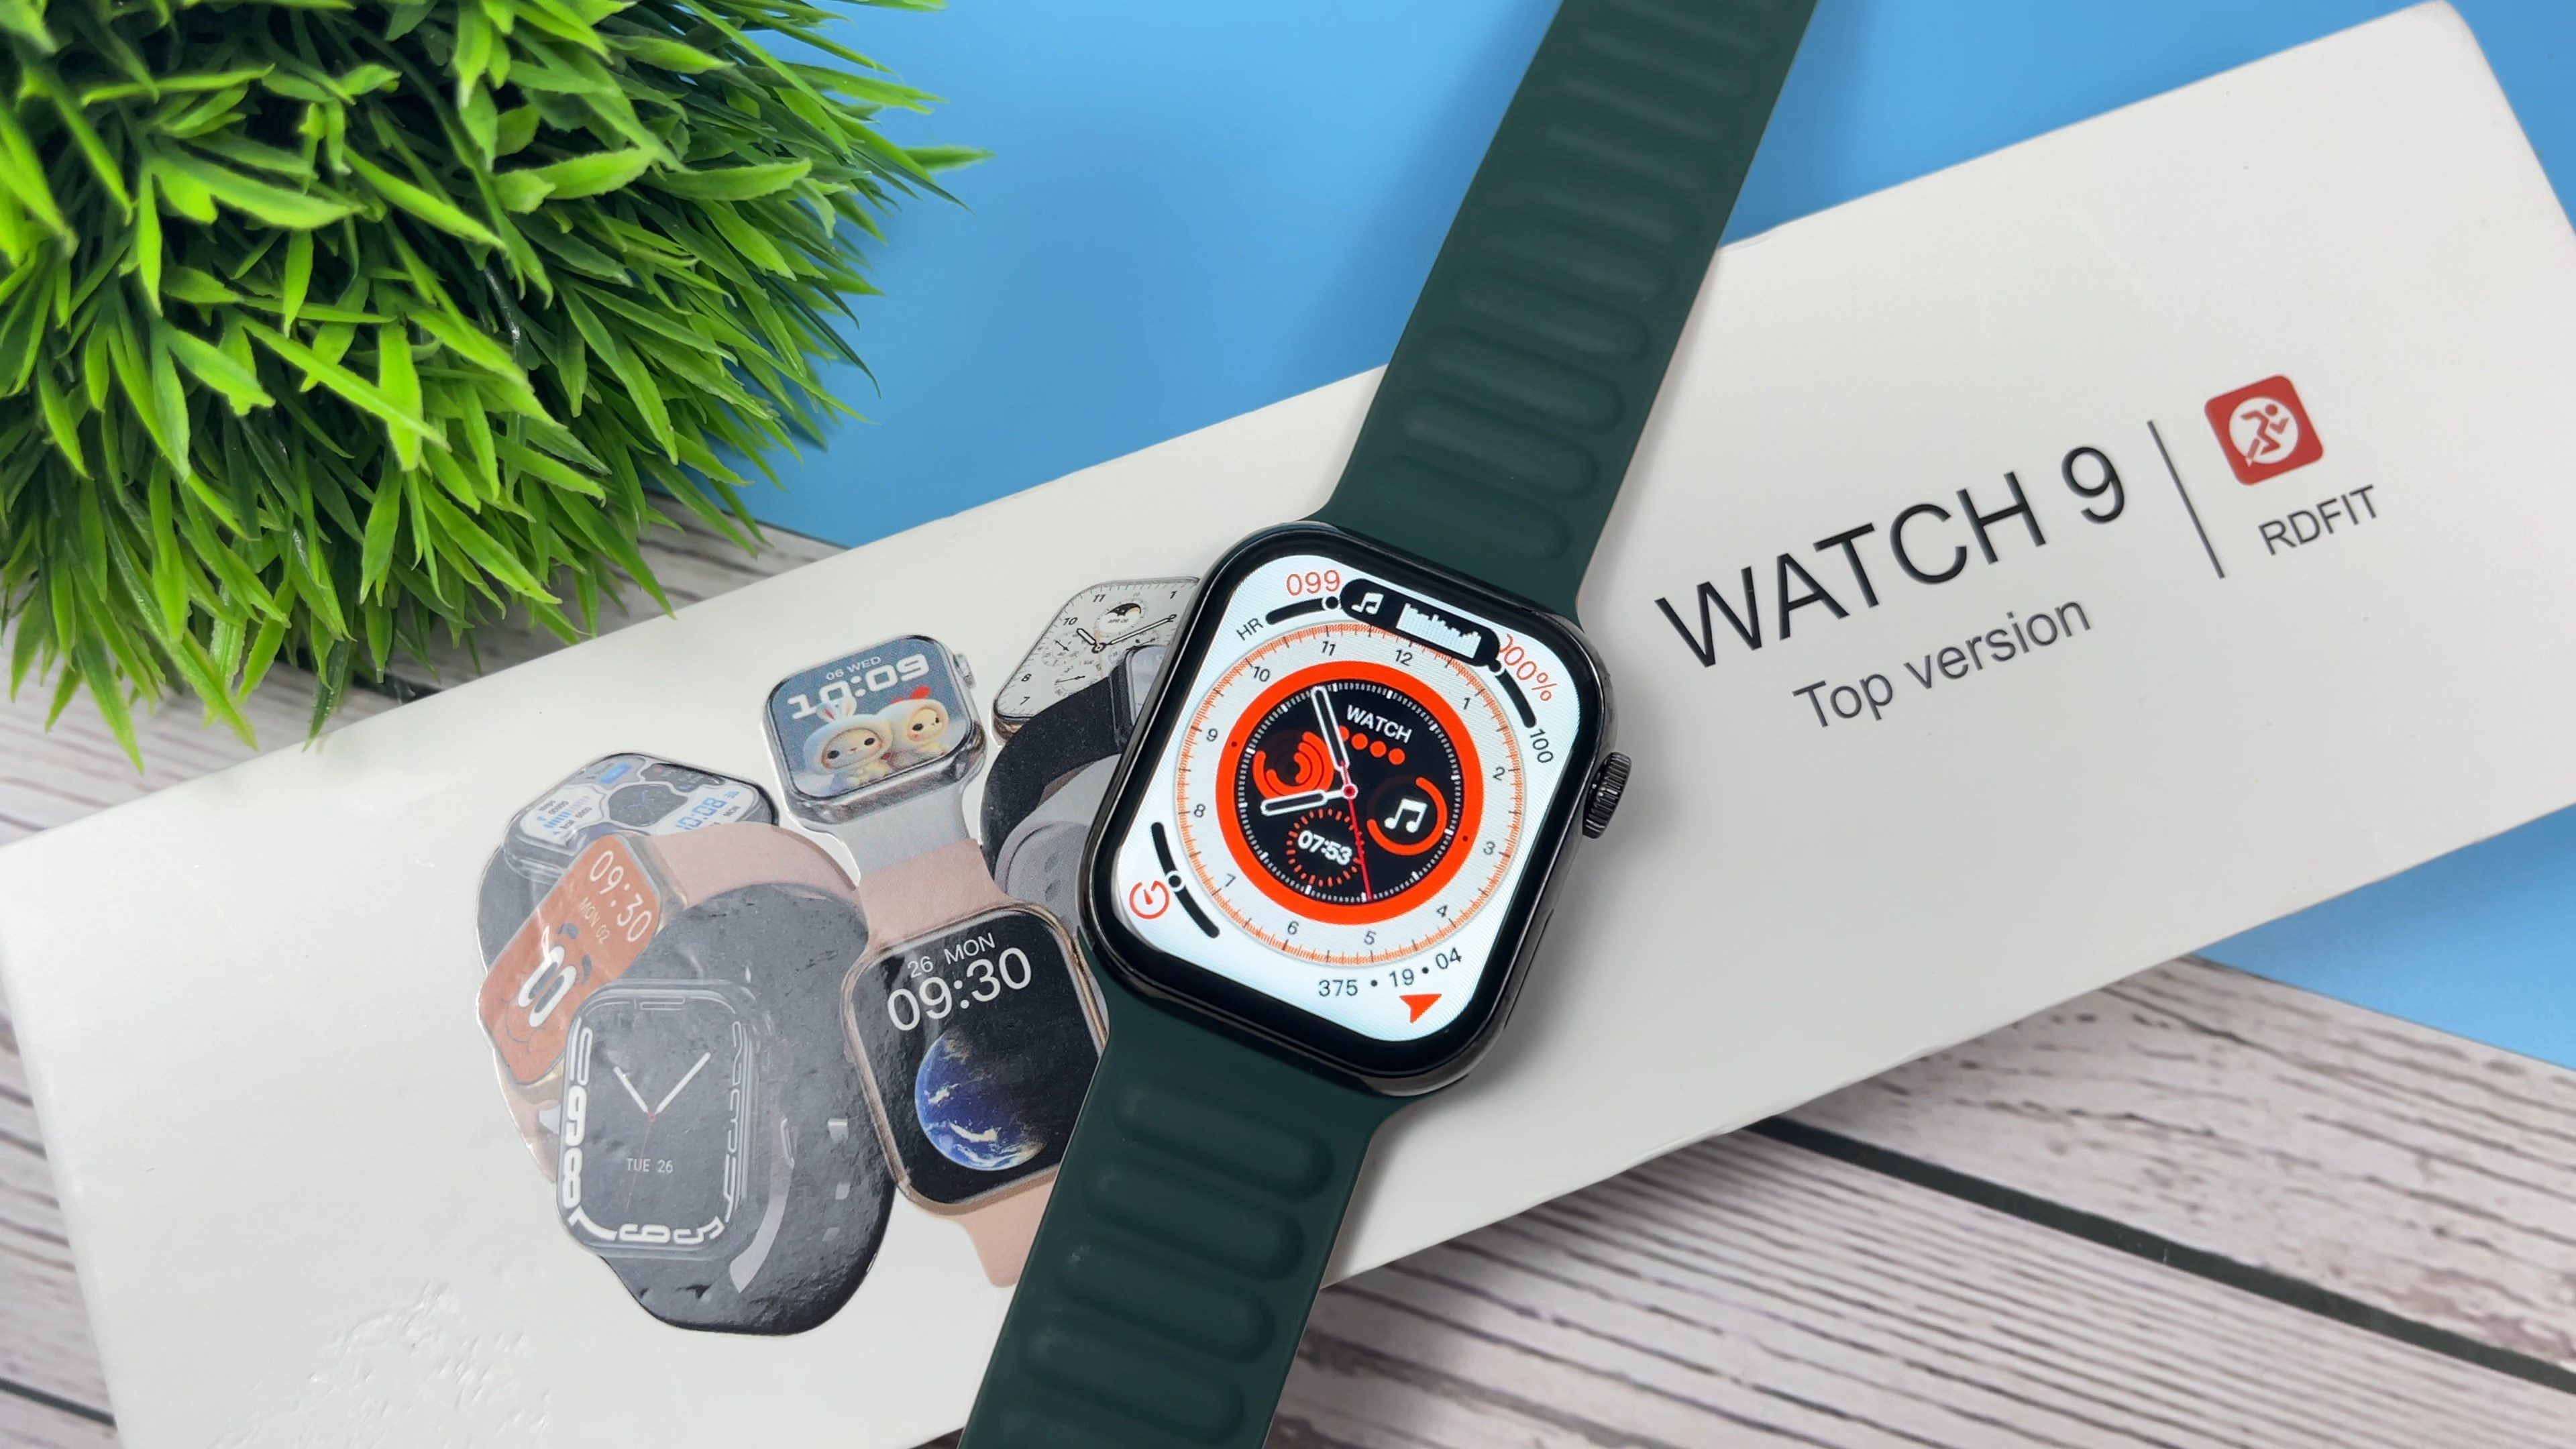 IW9 Smartwatch